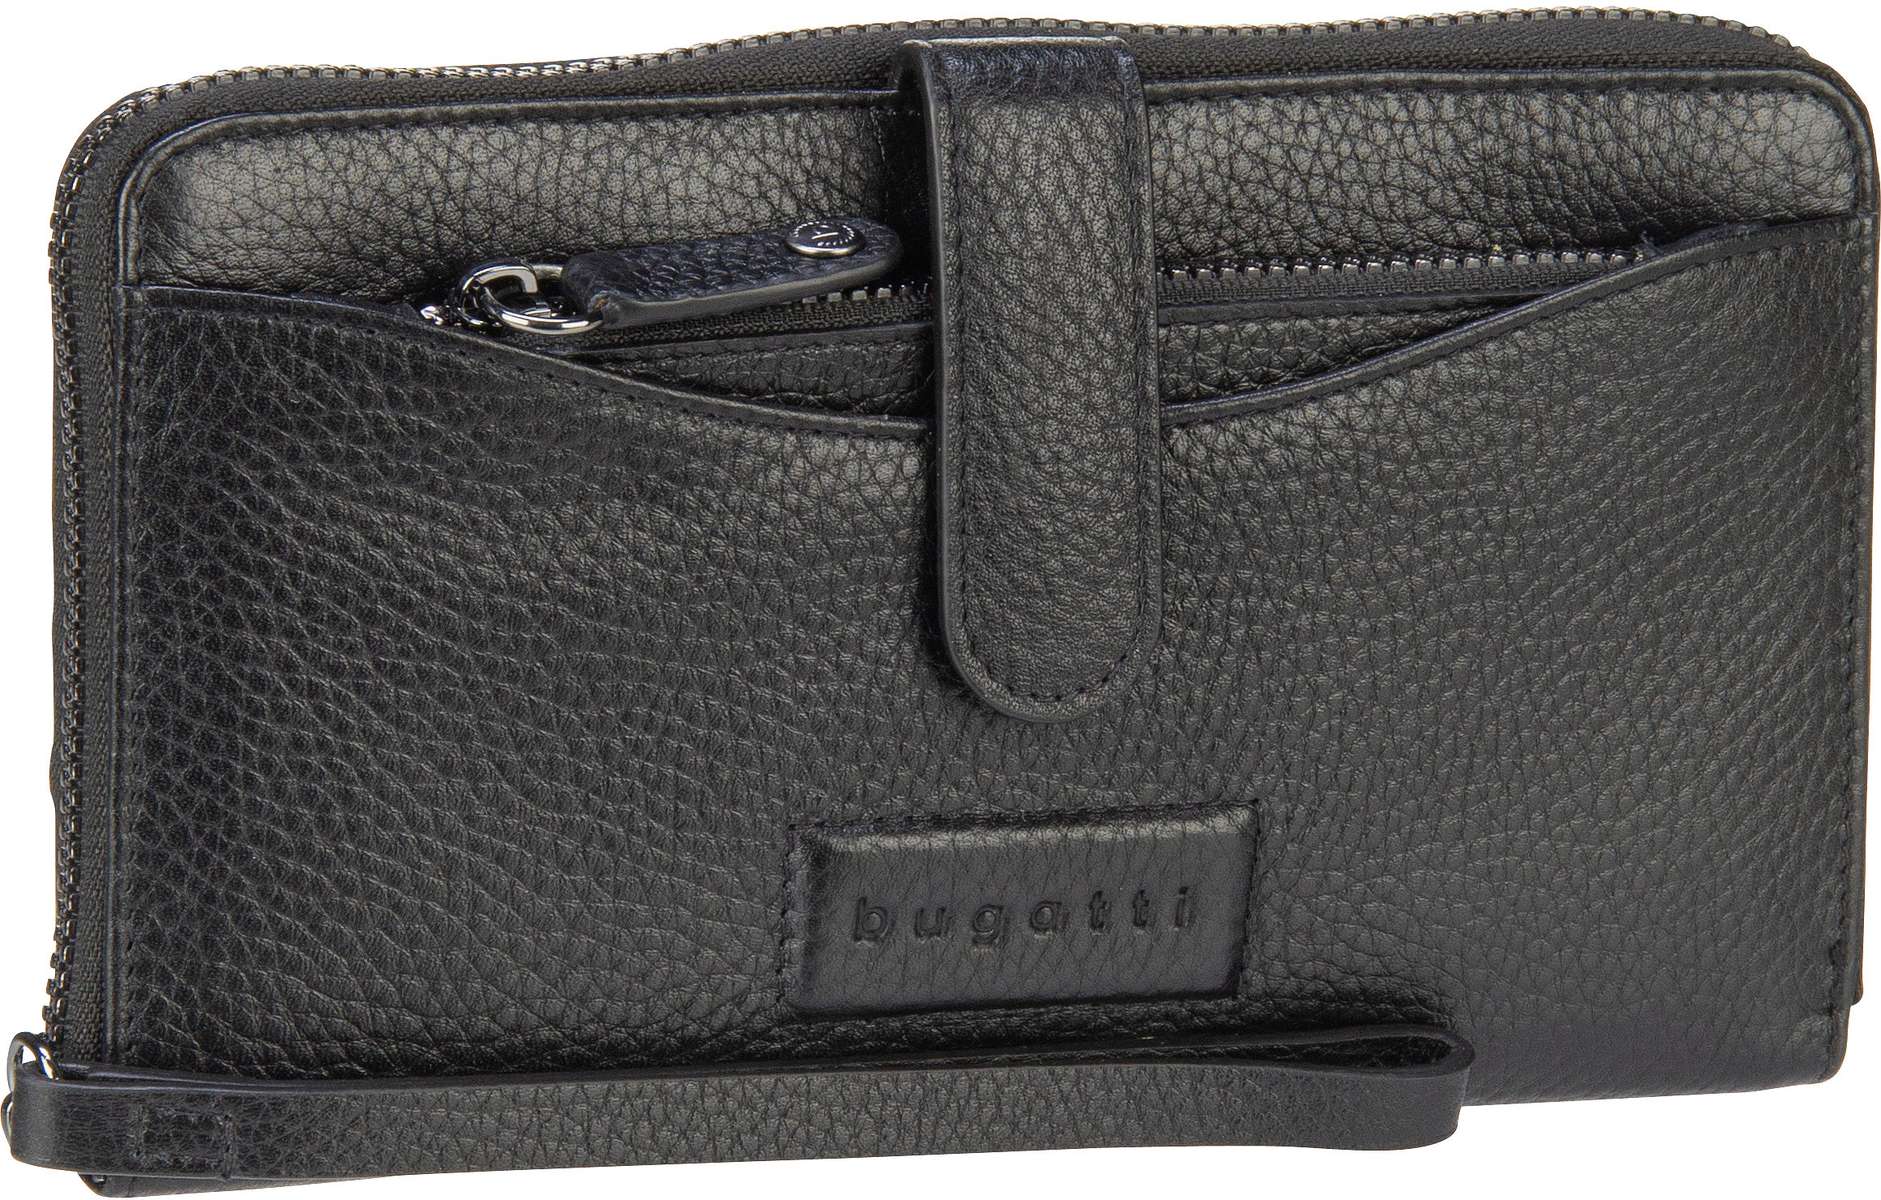 Bugatti Elsa Long Ladies Zip Key Wallet  in Schwarz (0.6 Liter), Geldbörse